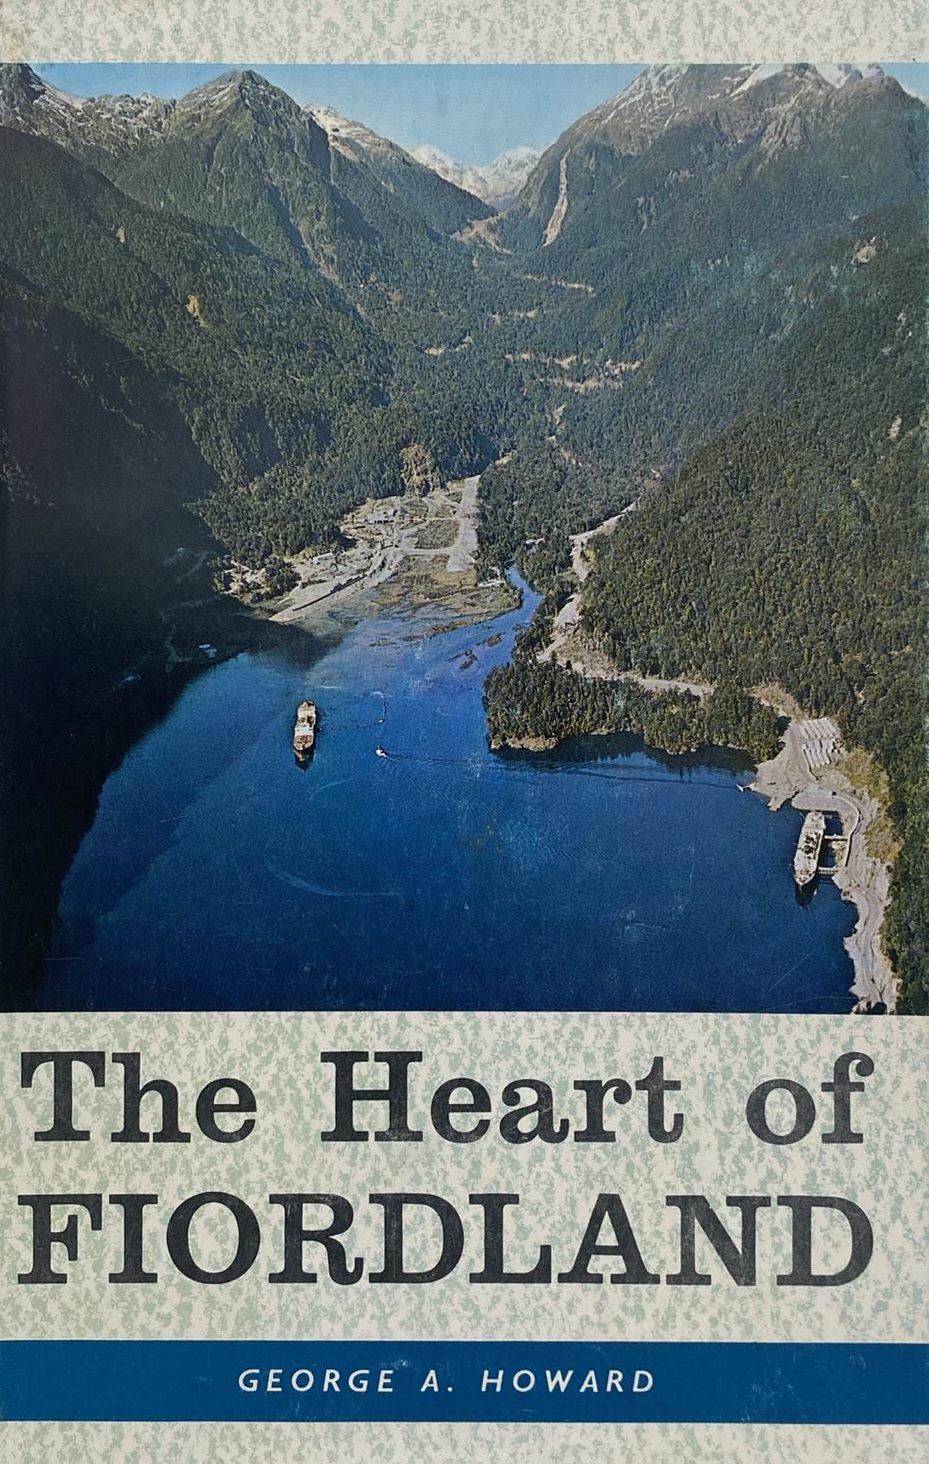 THE HEART OF FIORDLAND